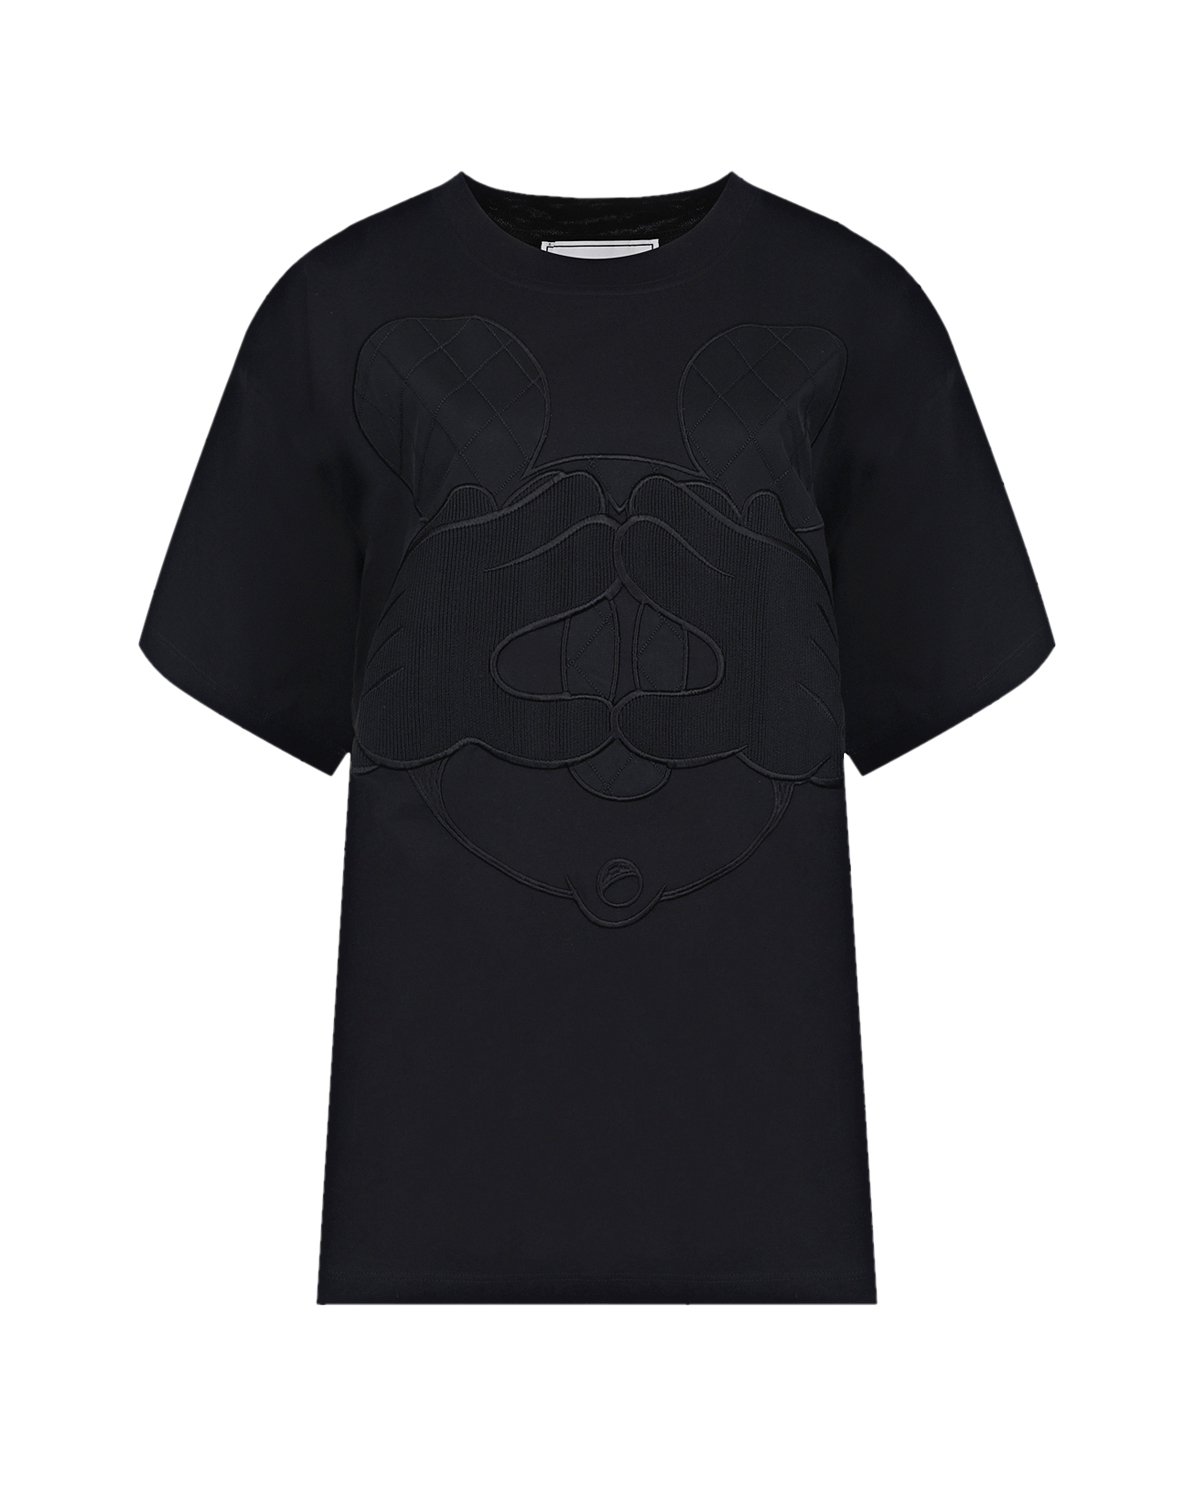 Купить Черная футболка с декором Микки Маус Iceberg, Черный, 100% хлопок, 50%хлопок+50%полиэстер